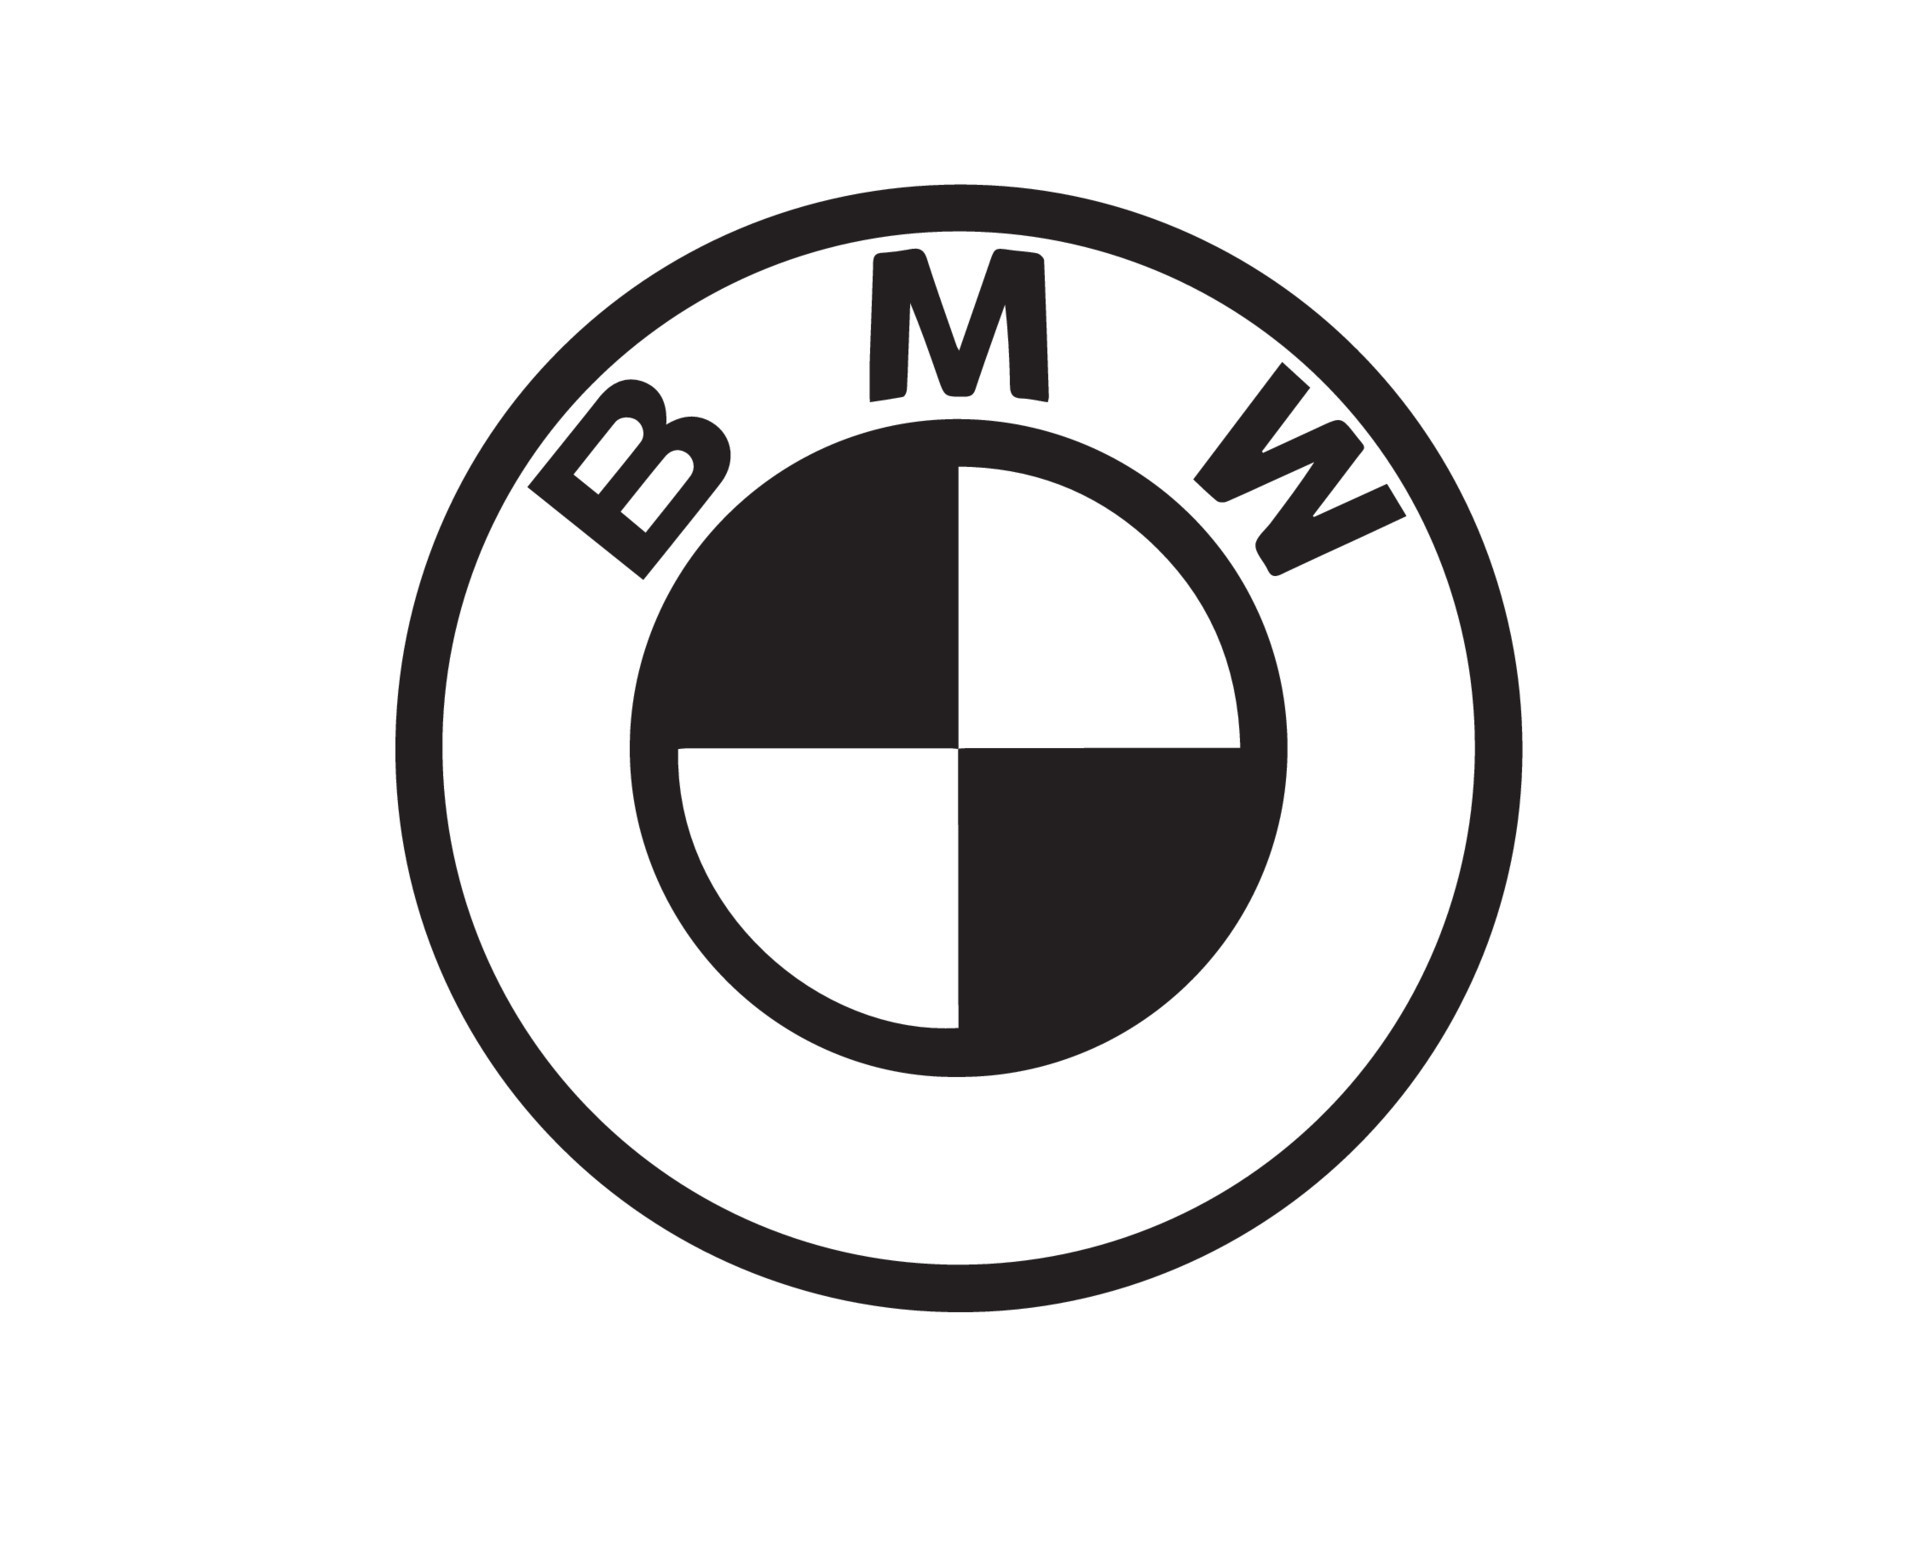 BMW Marke Logo Symbol schwarz Design Deutschland Auto Automobil Vektor  Illustration 20500224 Vektor Kunst bei Vecteezy